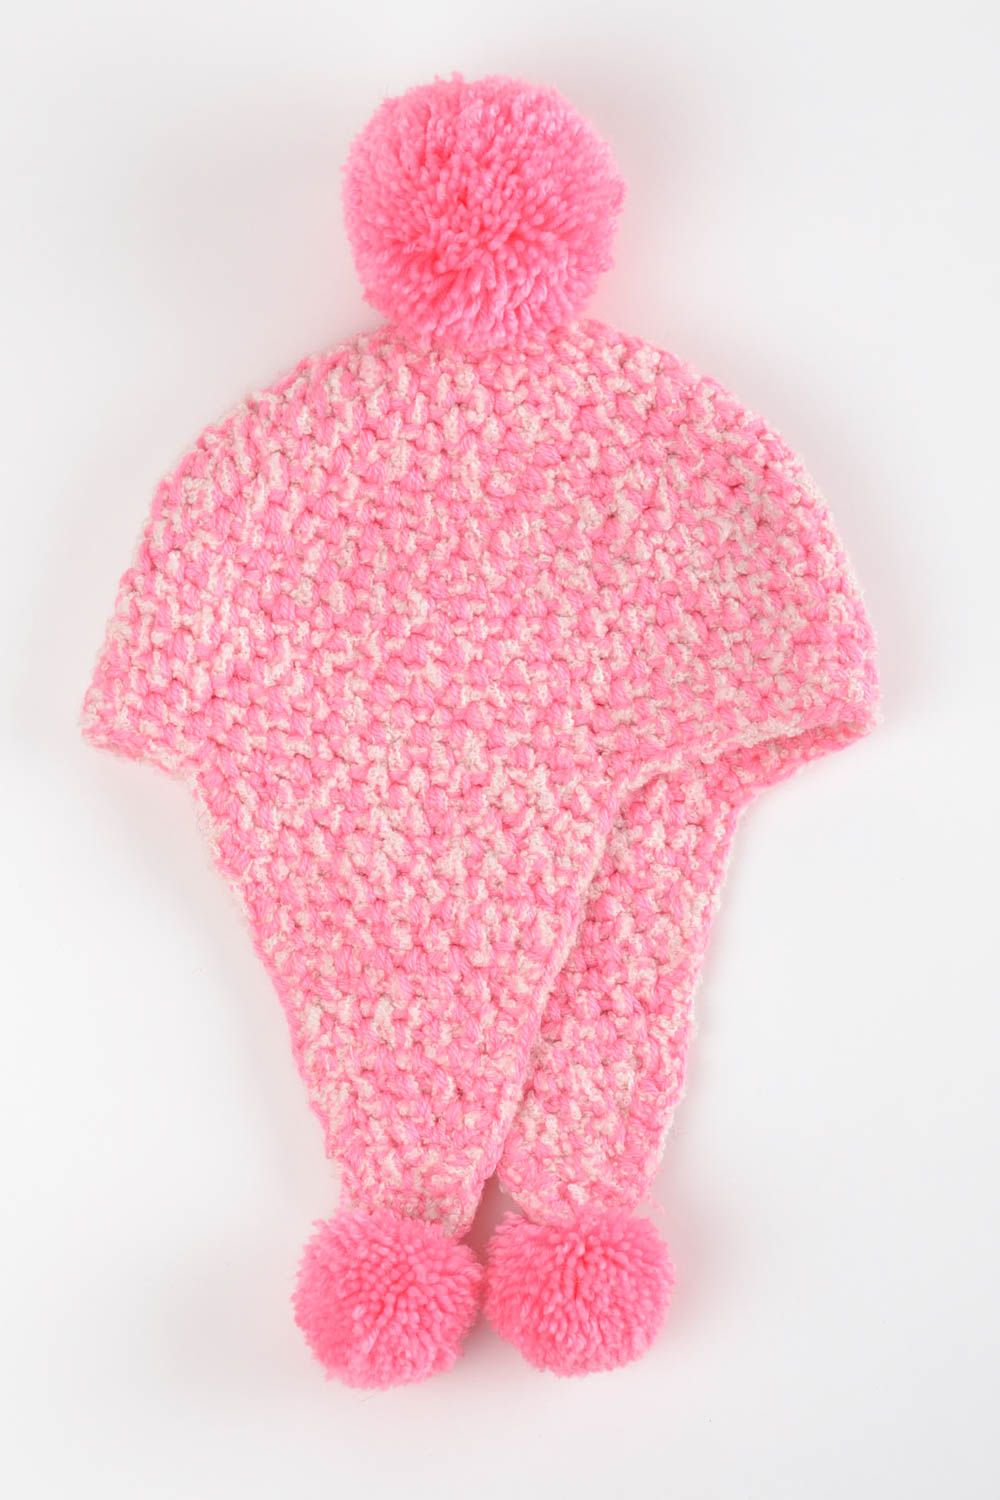 Bonnet tricot fait main Chapeau au crochet en fils roses Vêtement femme cadeau photo 2